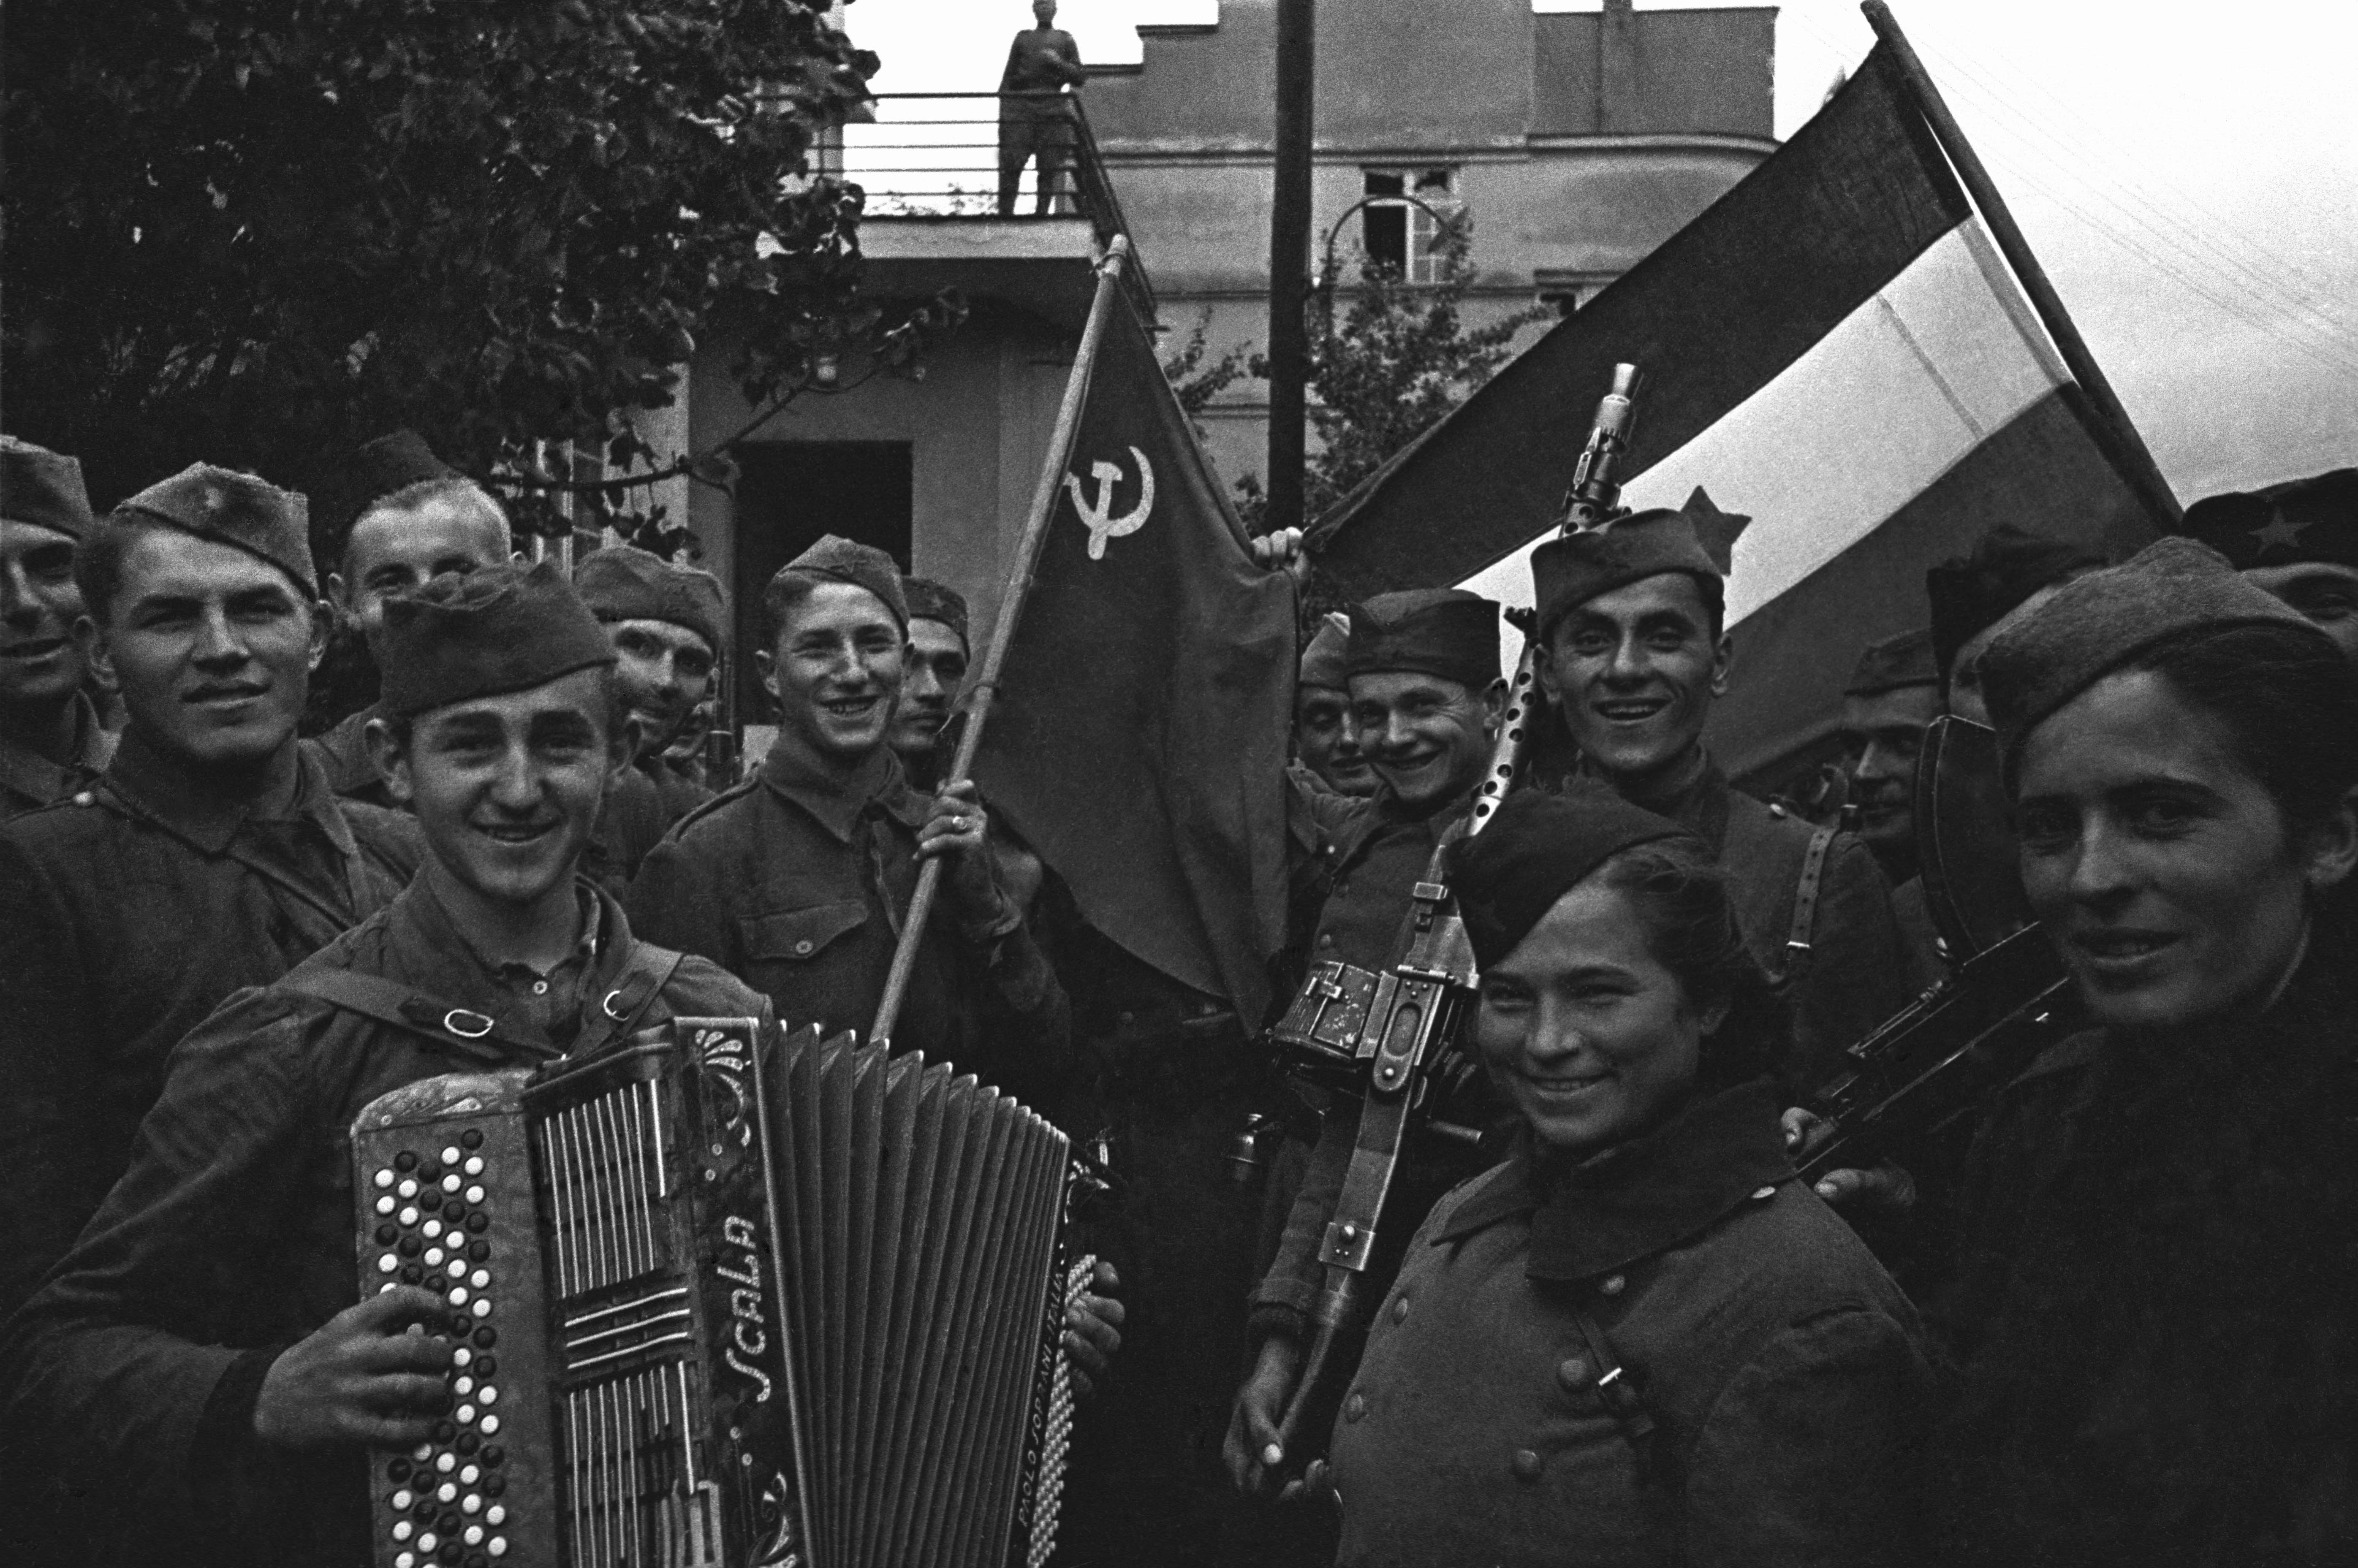 День победы фото 1945